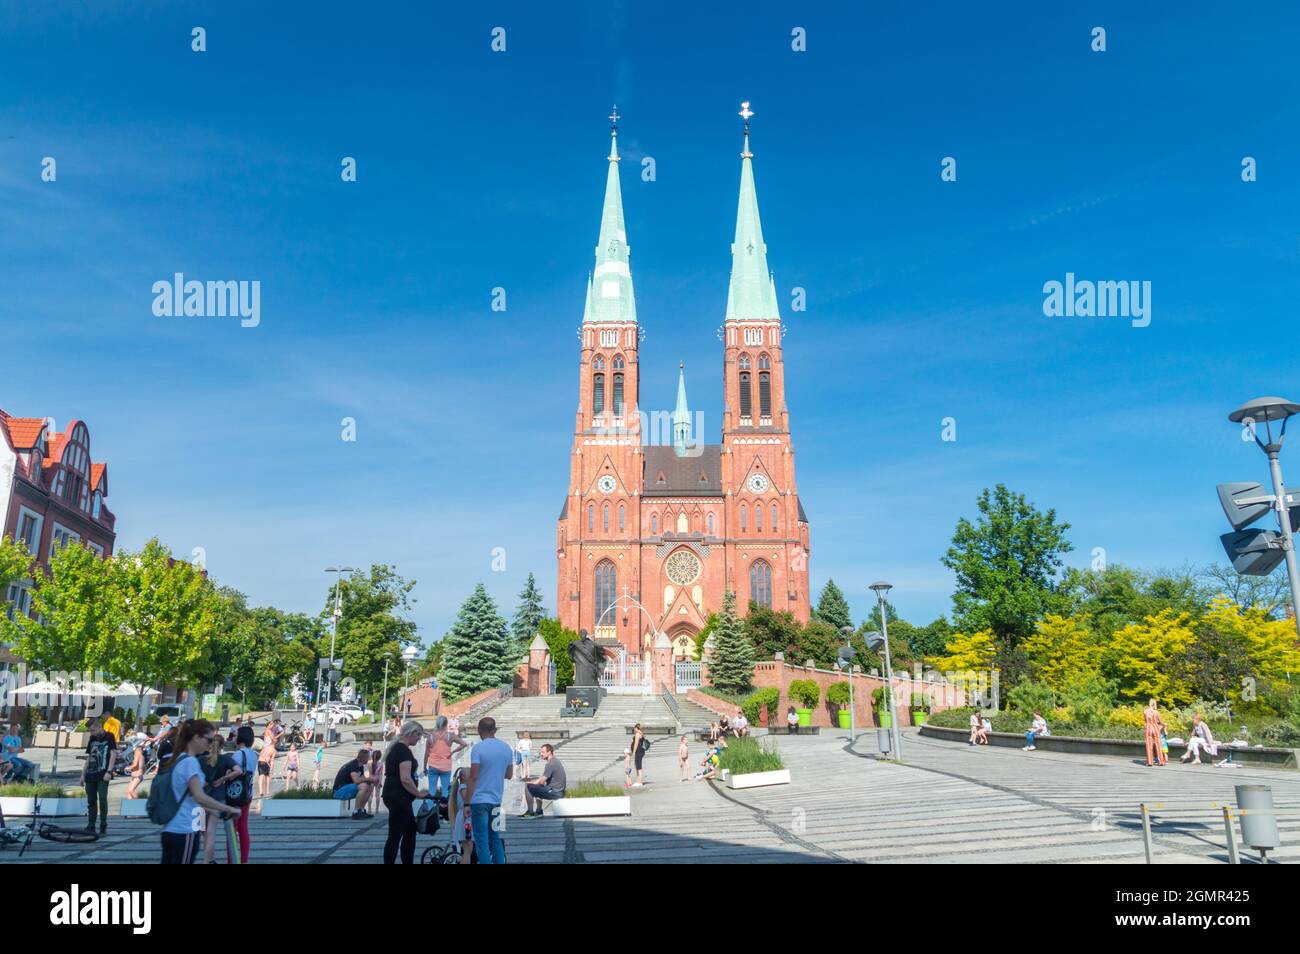 Rybnik, Poland - June 4, 2021: John Paul II square with Roman catholic Basilica of Saint Anthony. Stock Photo